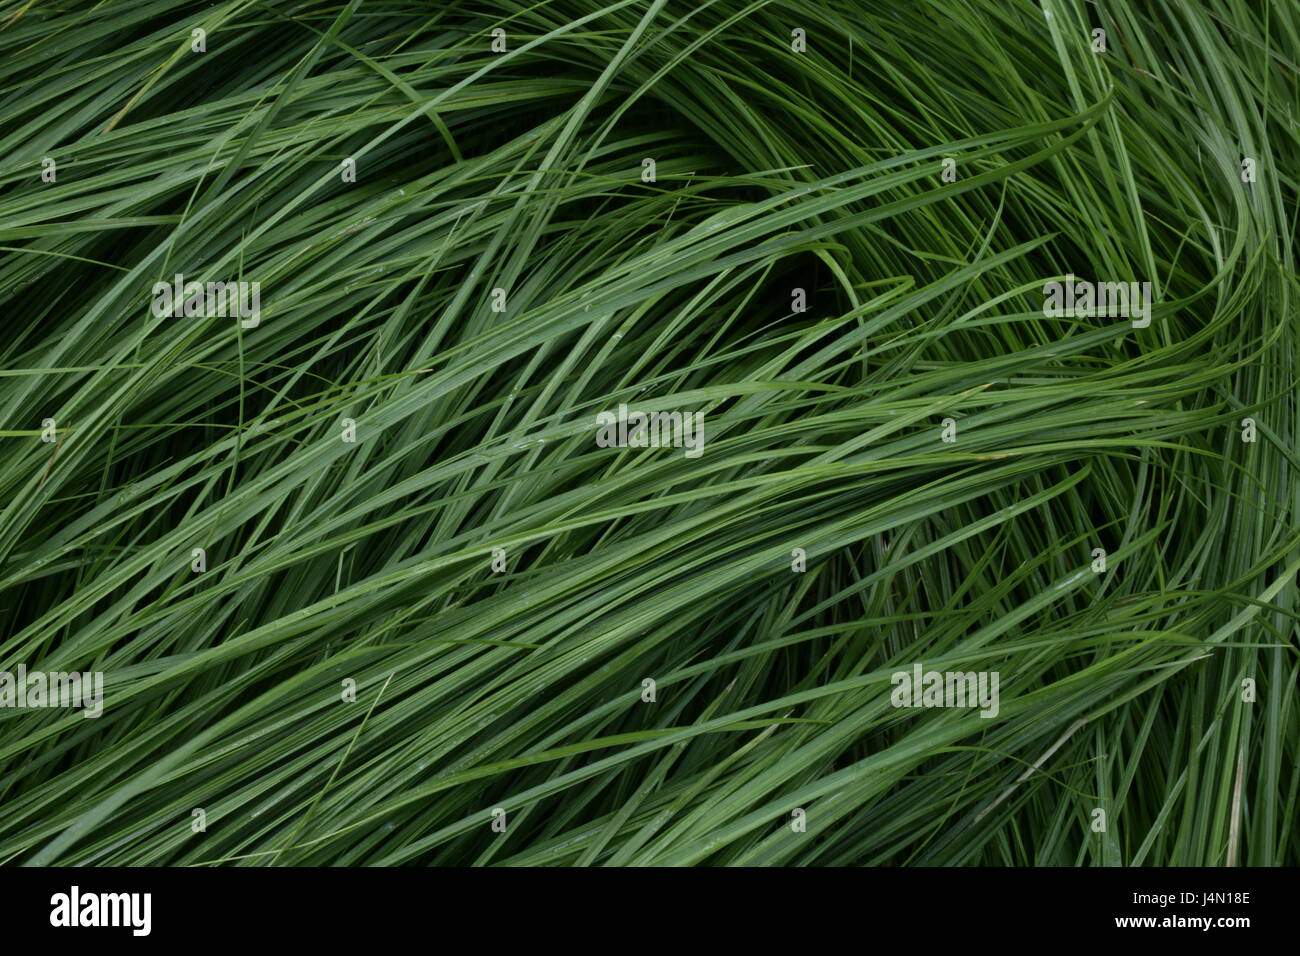 Erba, close up, la natura, il verde, botanica, vegetazione, foglie e steli d'erba, stocchi, campioni, struttura, impianto, sfondo, Foto Stock